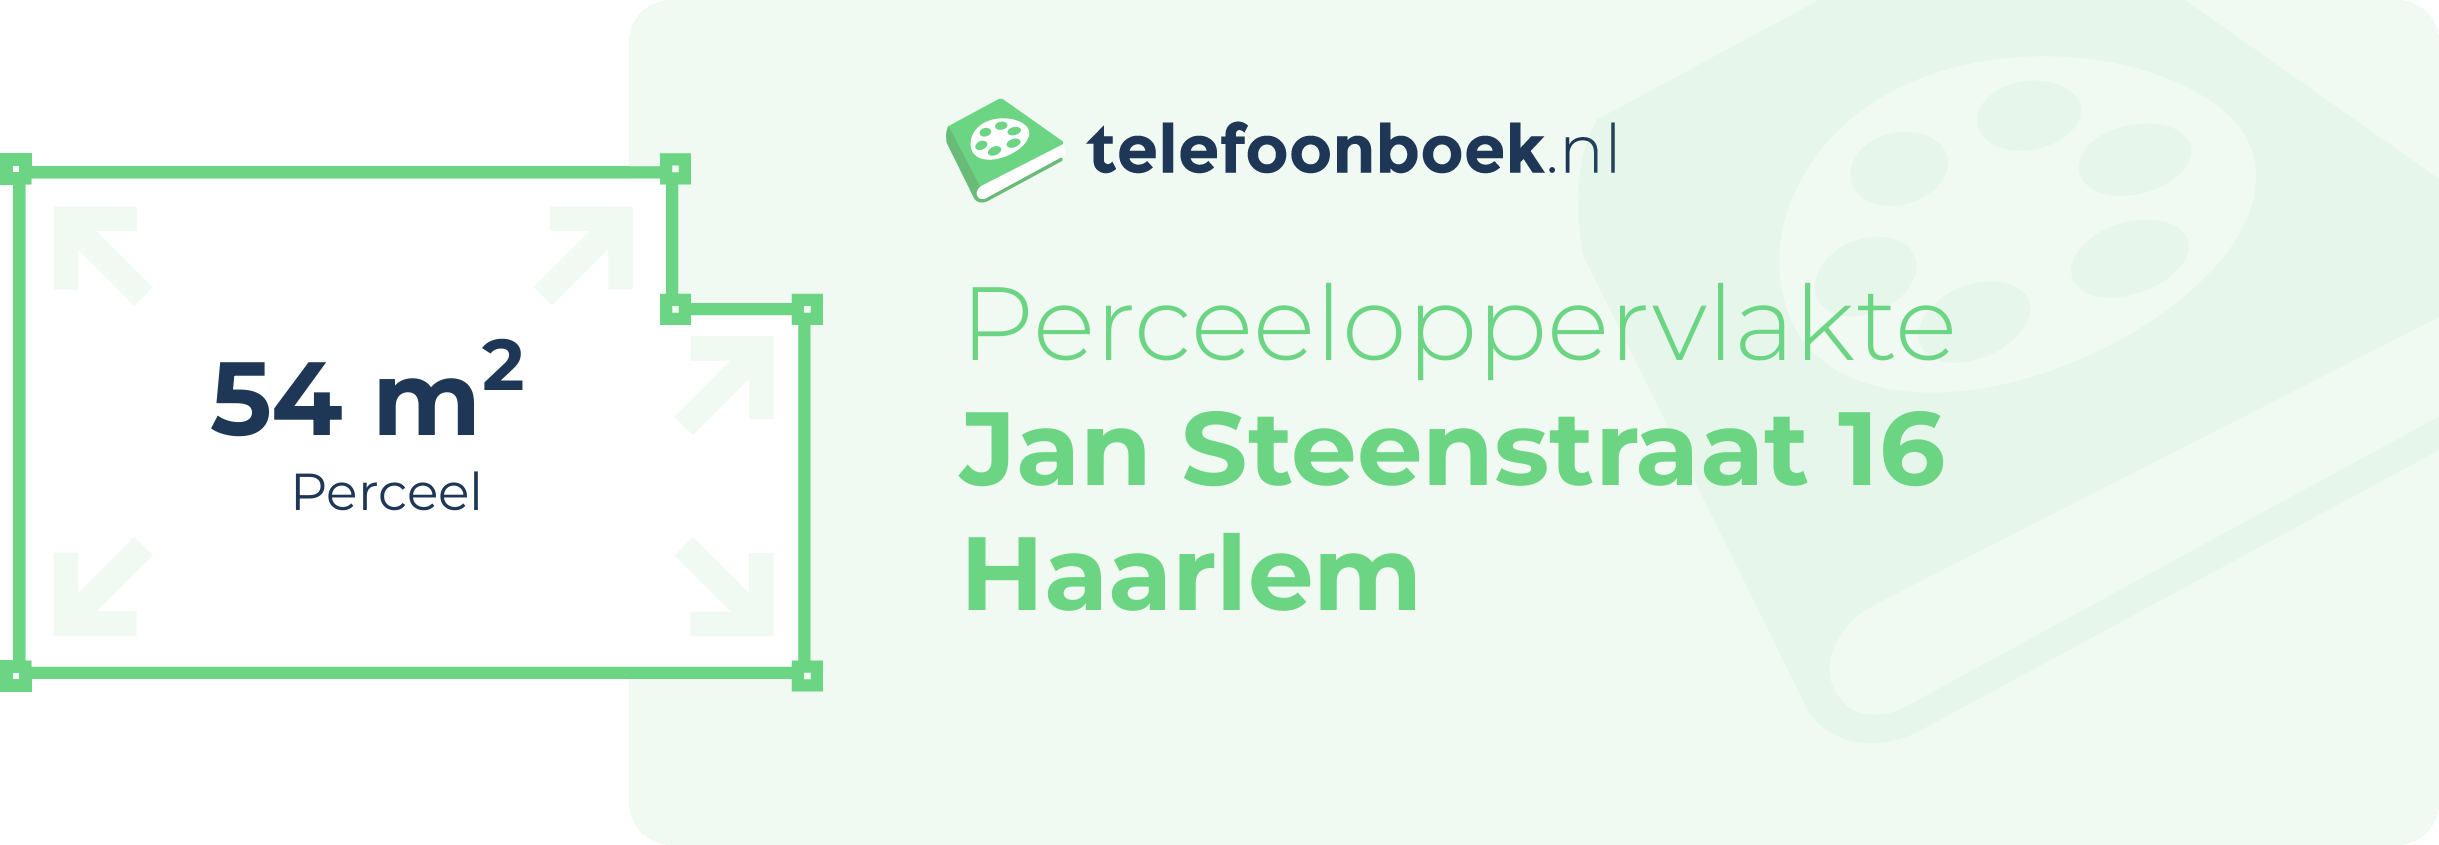 Perceeloppervlakte Jan Steenstraat 16 Haarlem